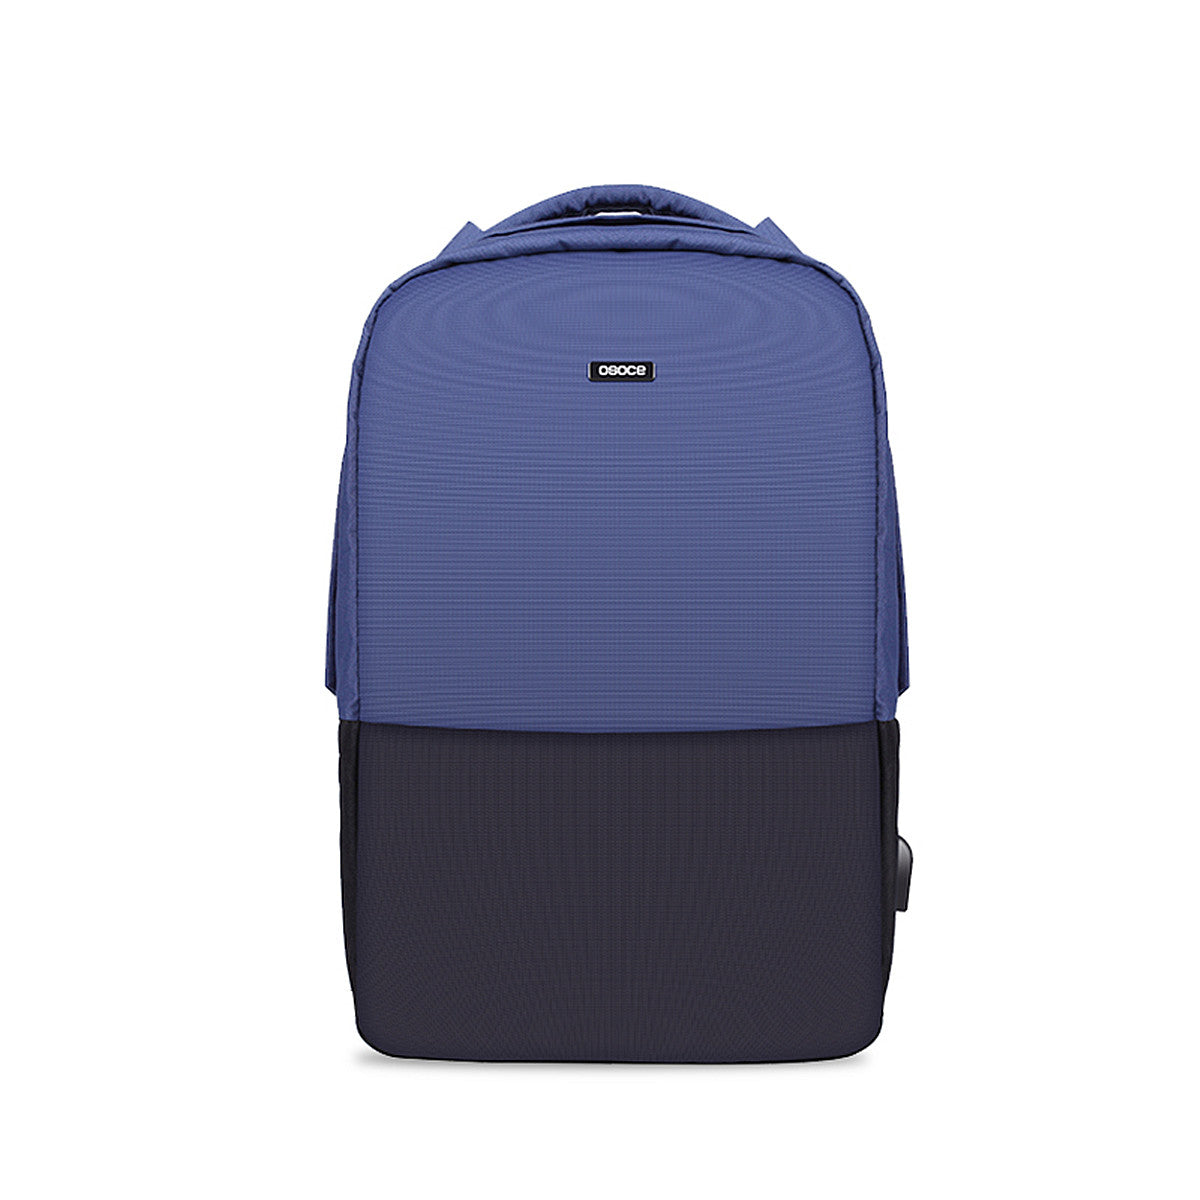 USB 15.6 Inch Backpack Waterproof  Laptop Bag Camping Travel Bag Student School Bag Shoulder Bag